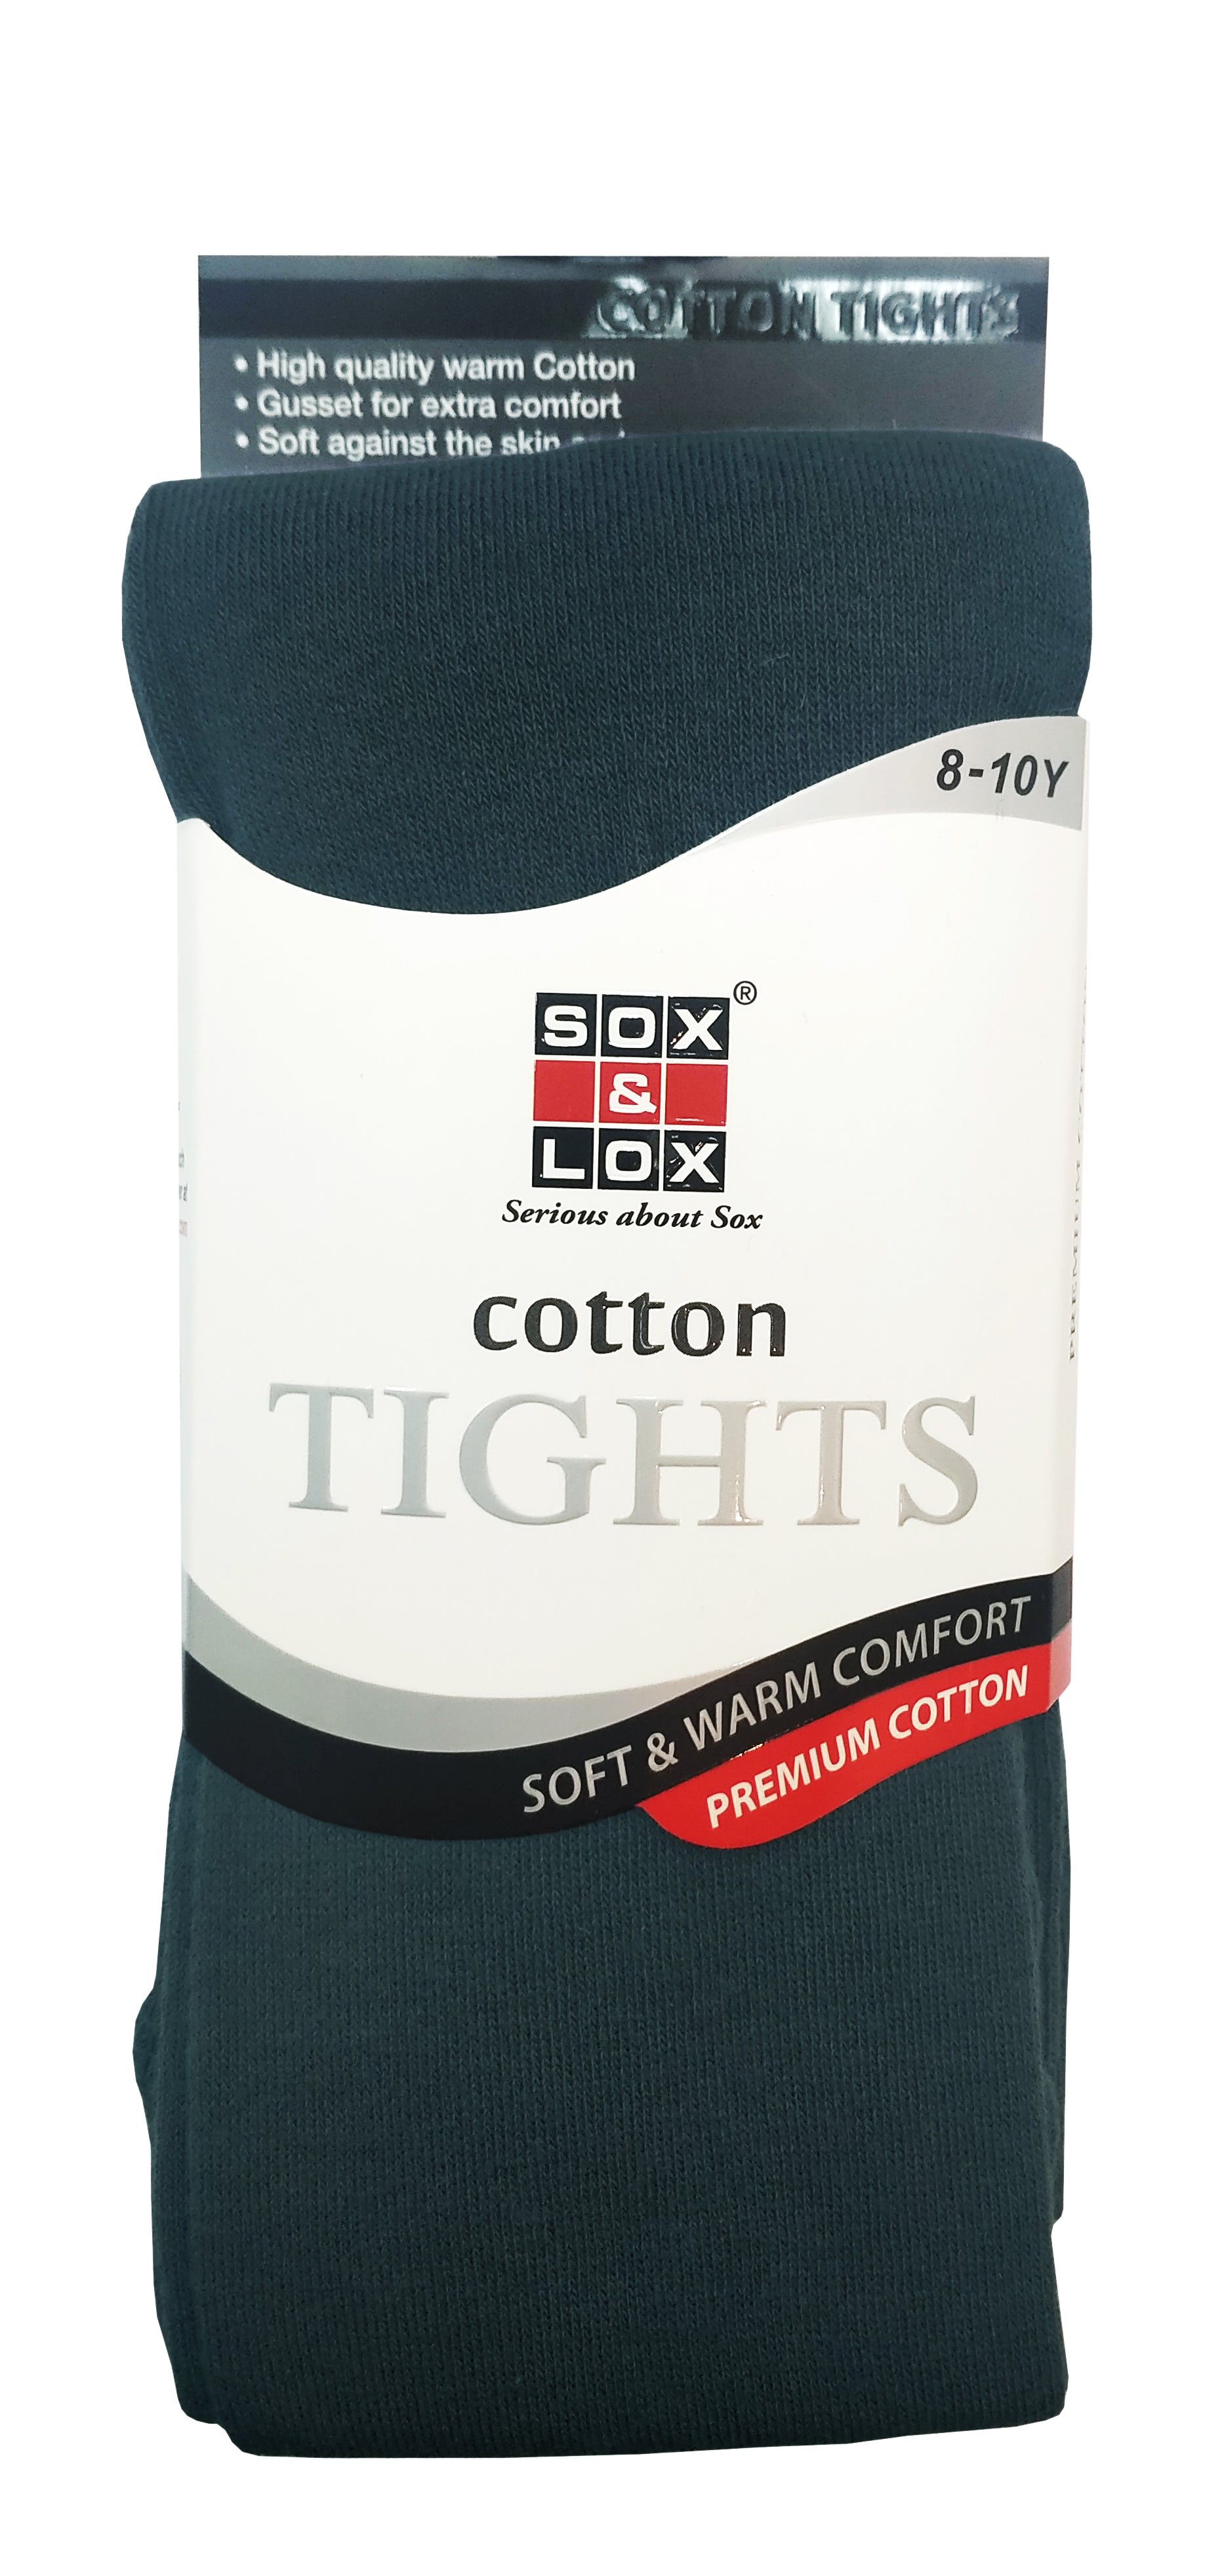 Children's Cotton Tights (8-10Y)